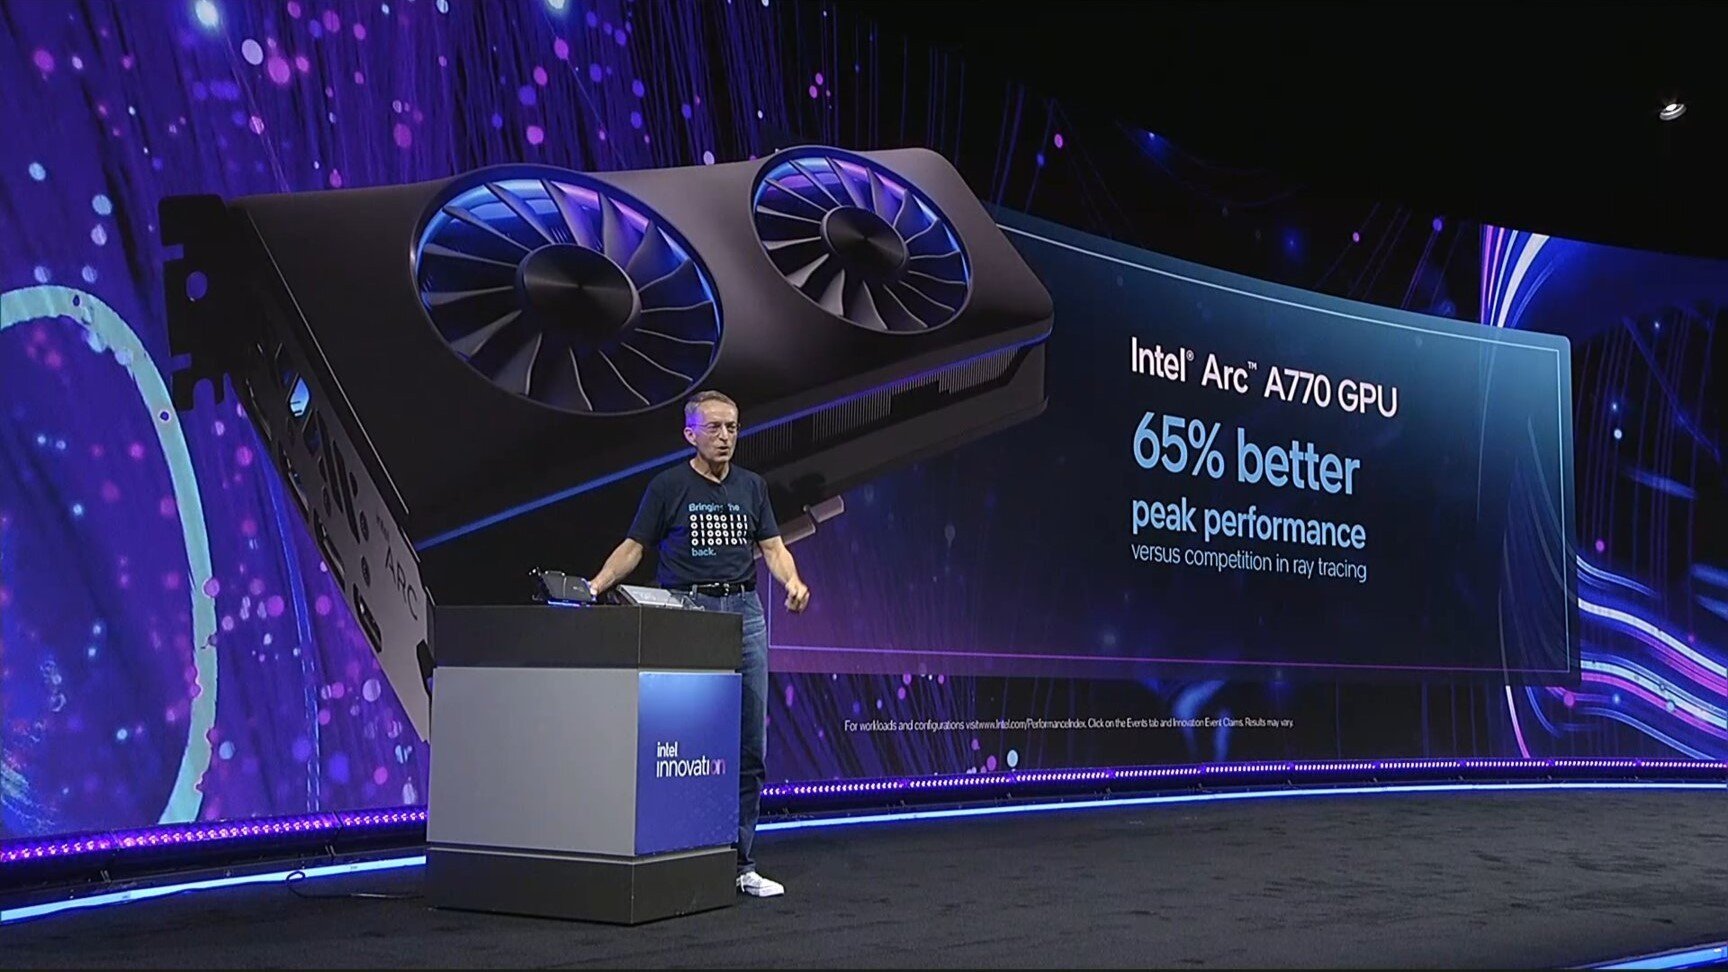 Флагманская видеокарта Intel Arc А770 выйдет 12 октября ее цена удивительно низкая